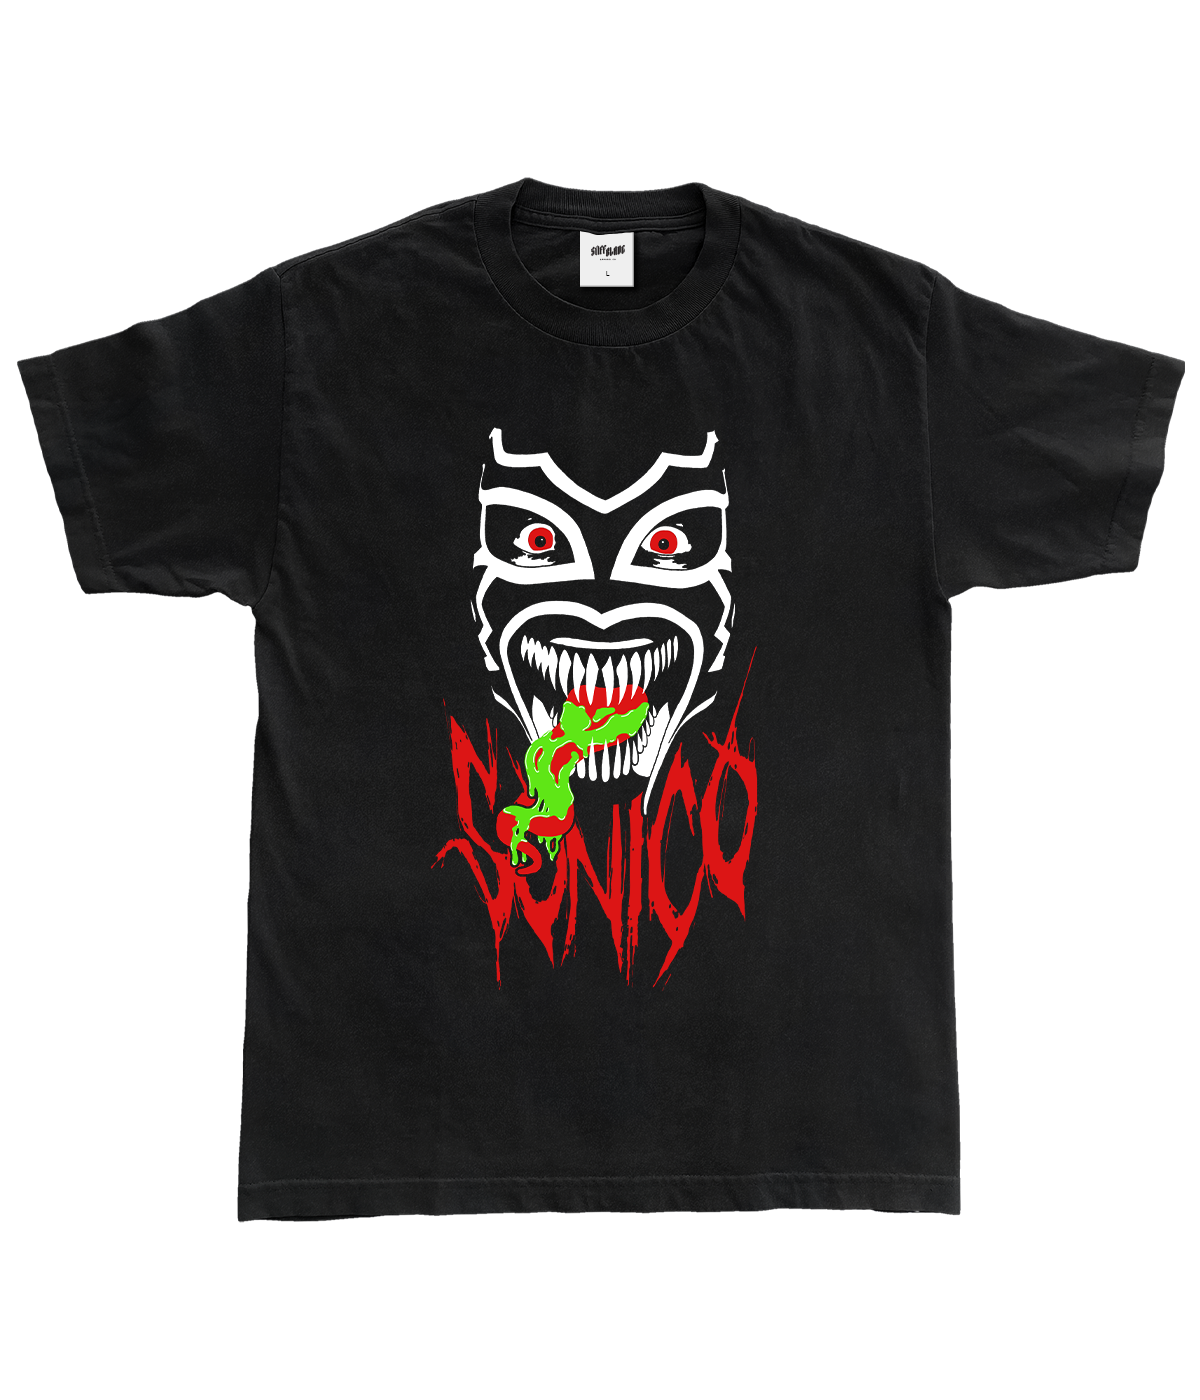 Sonico - Slime Shirt